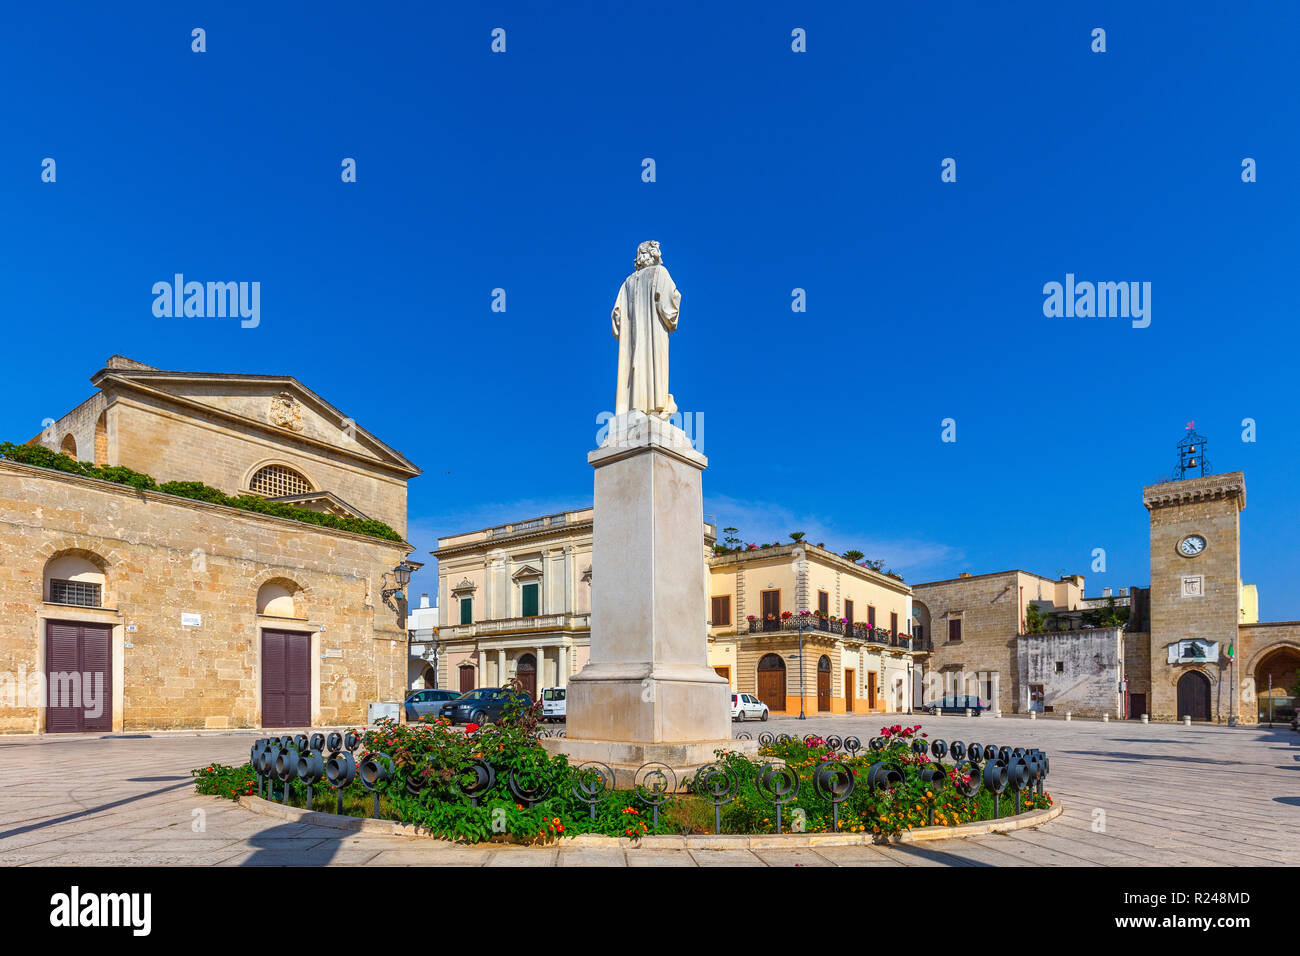 Piazza san vincenzo -Fotos und -Bildmaterial in hoher Auflösung – Alamy